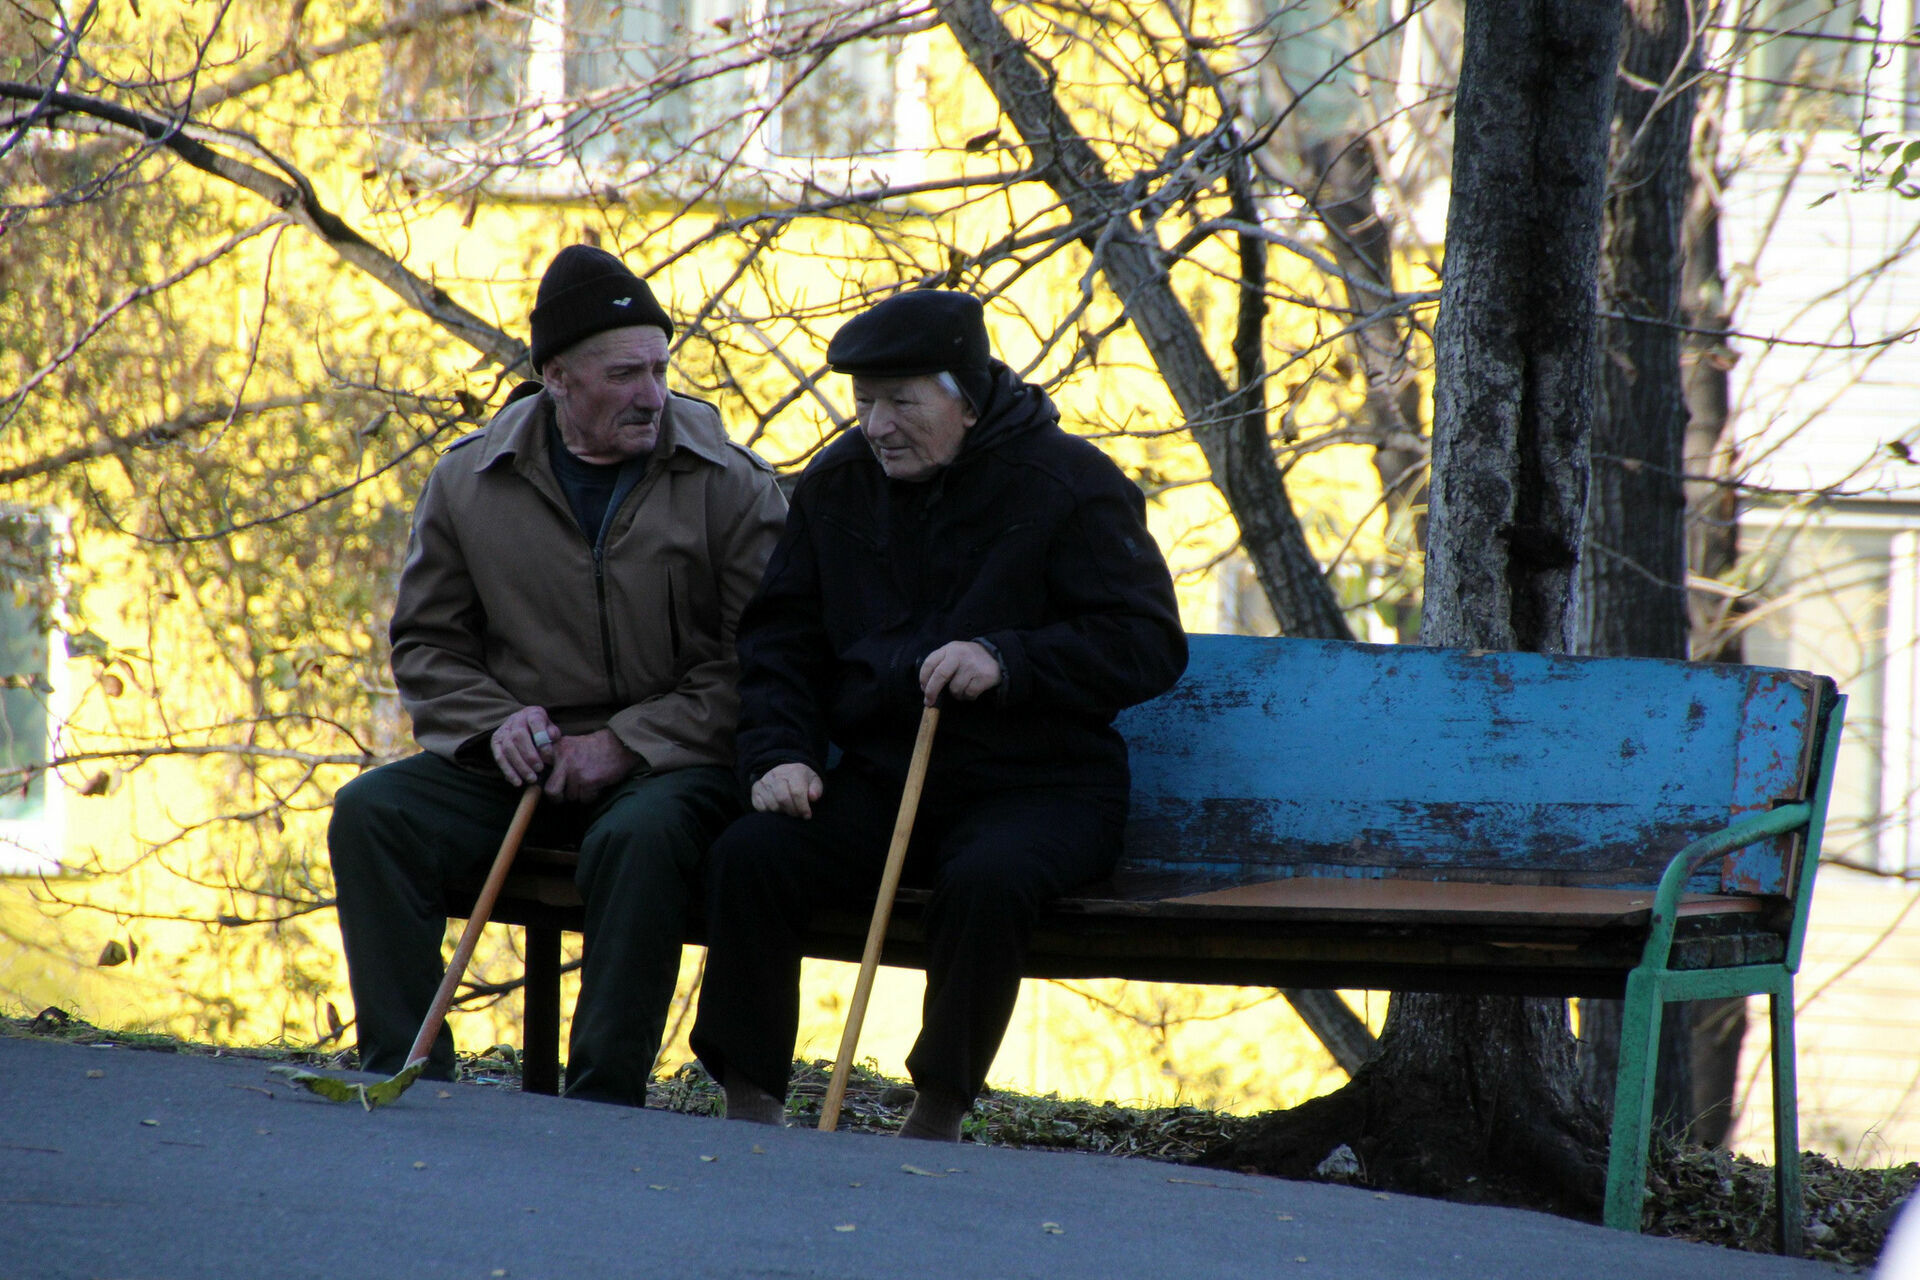 Россия будет выплачивать пенсии иностранцам